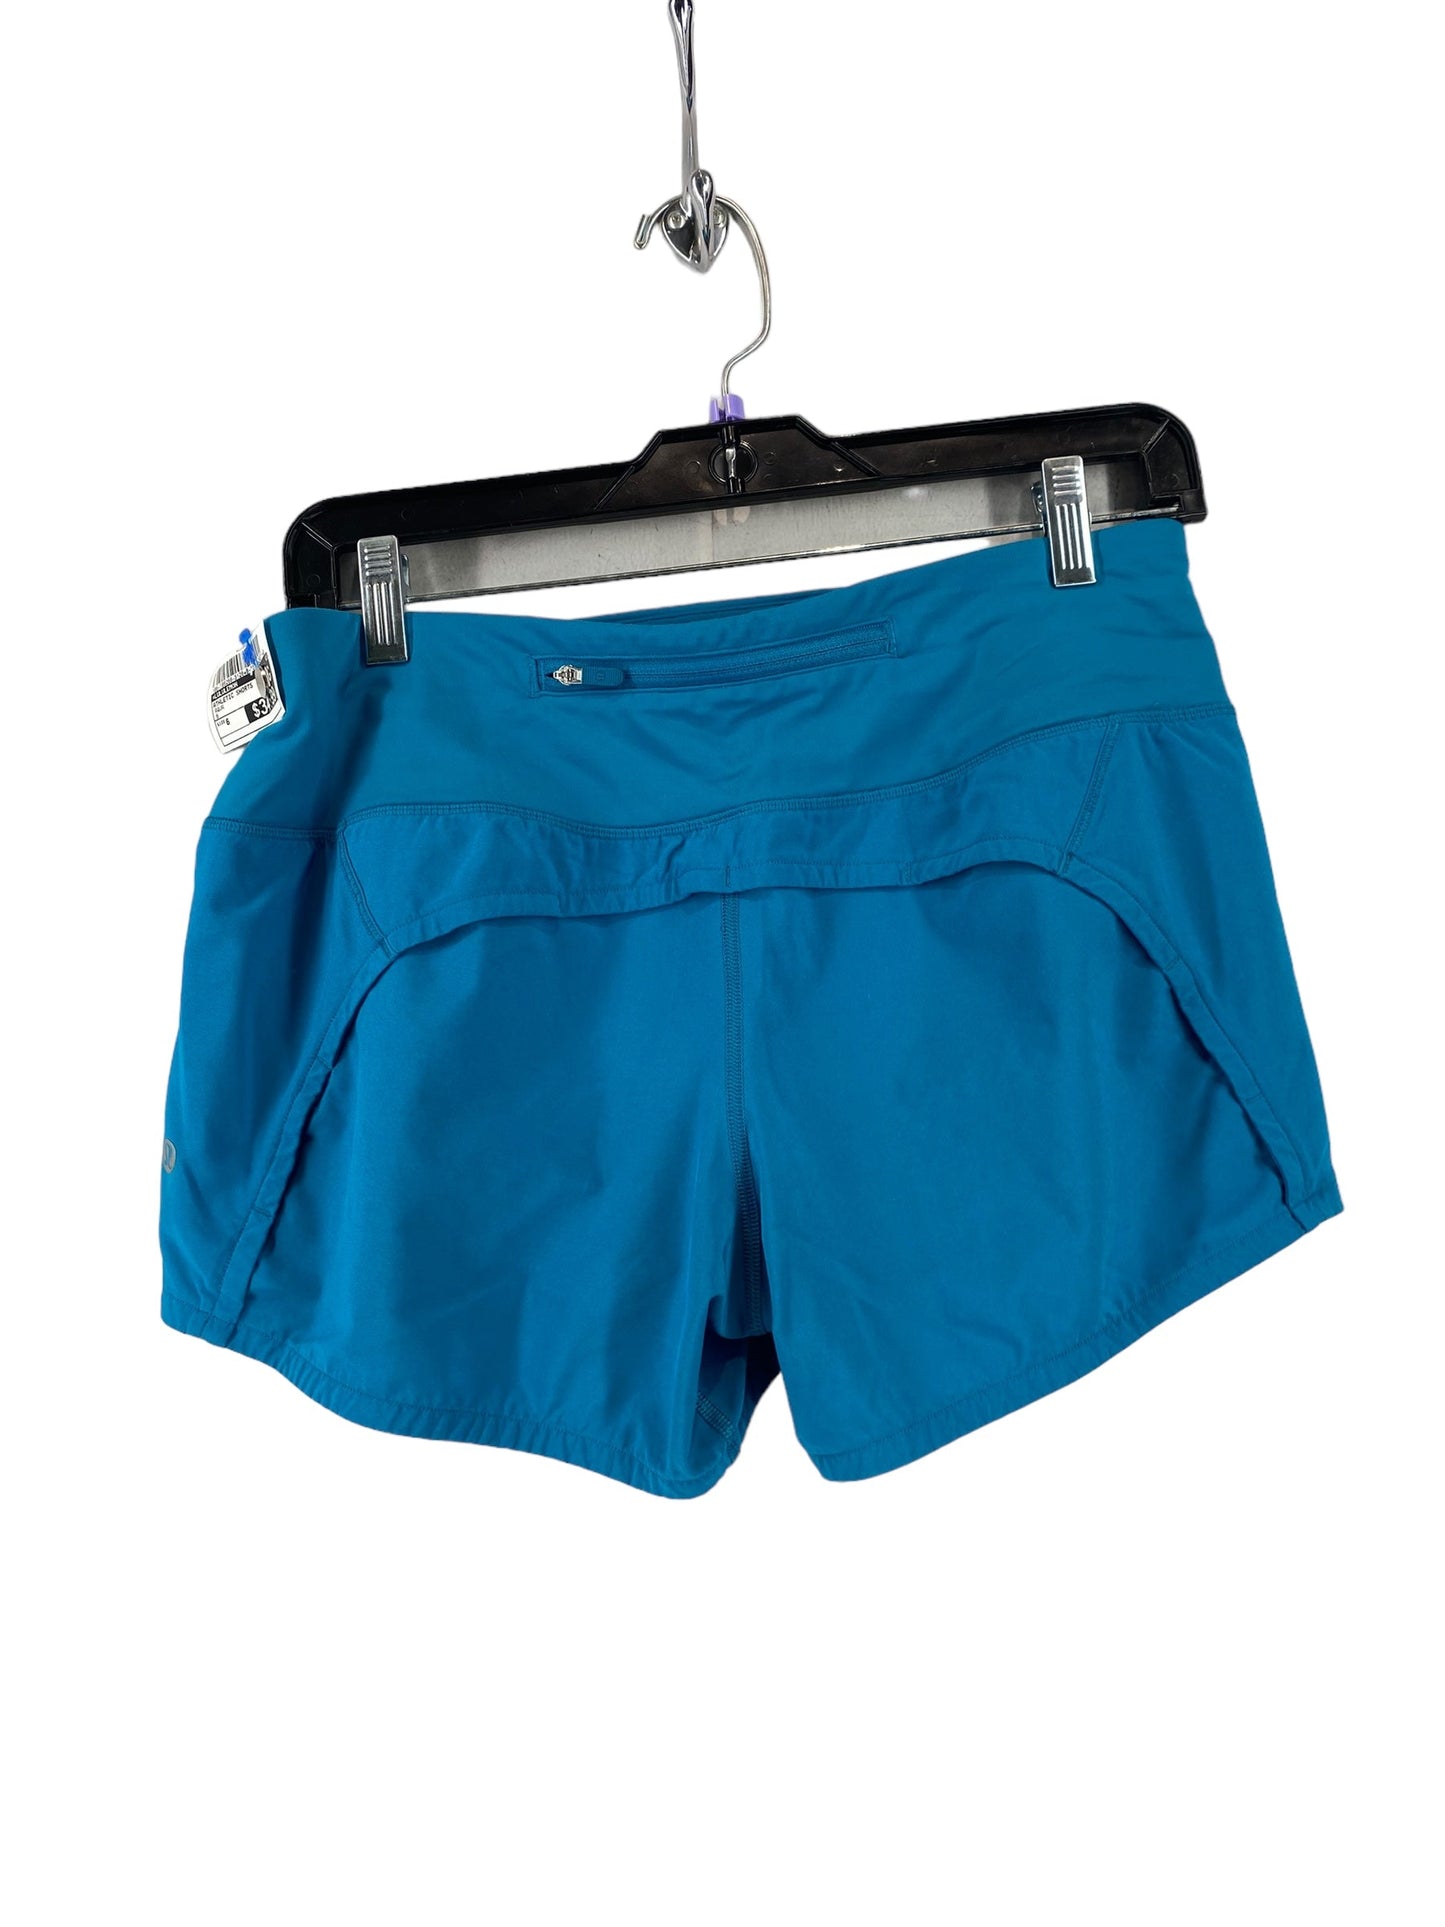 Aqua Athletic Shorts Lululemon, Size 6